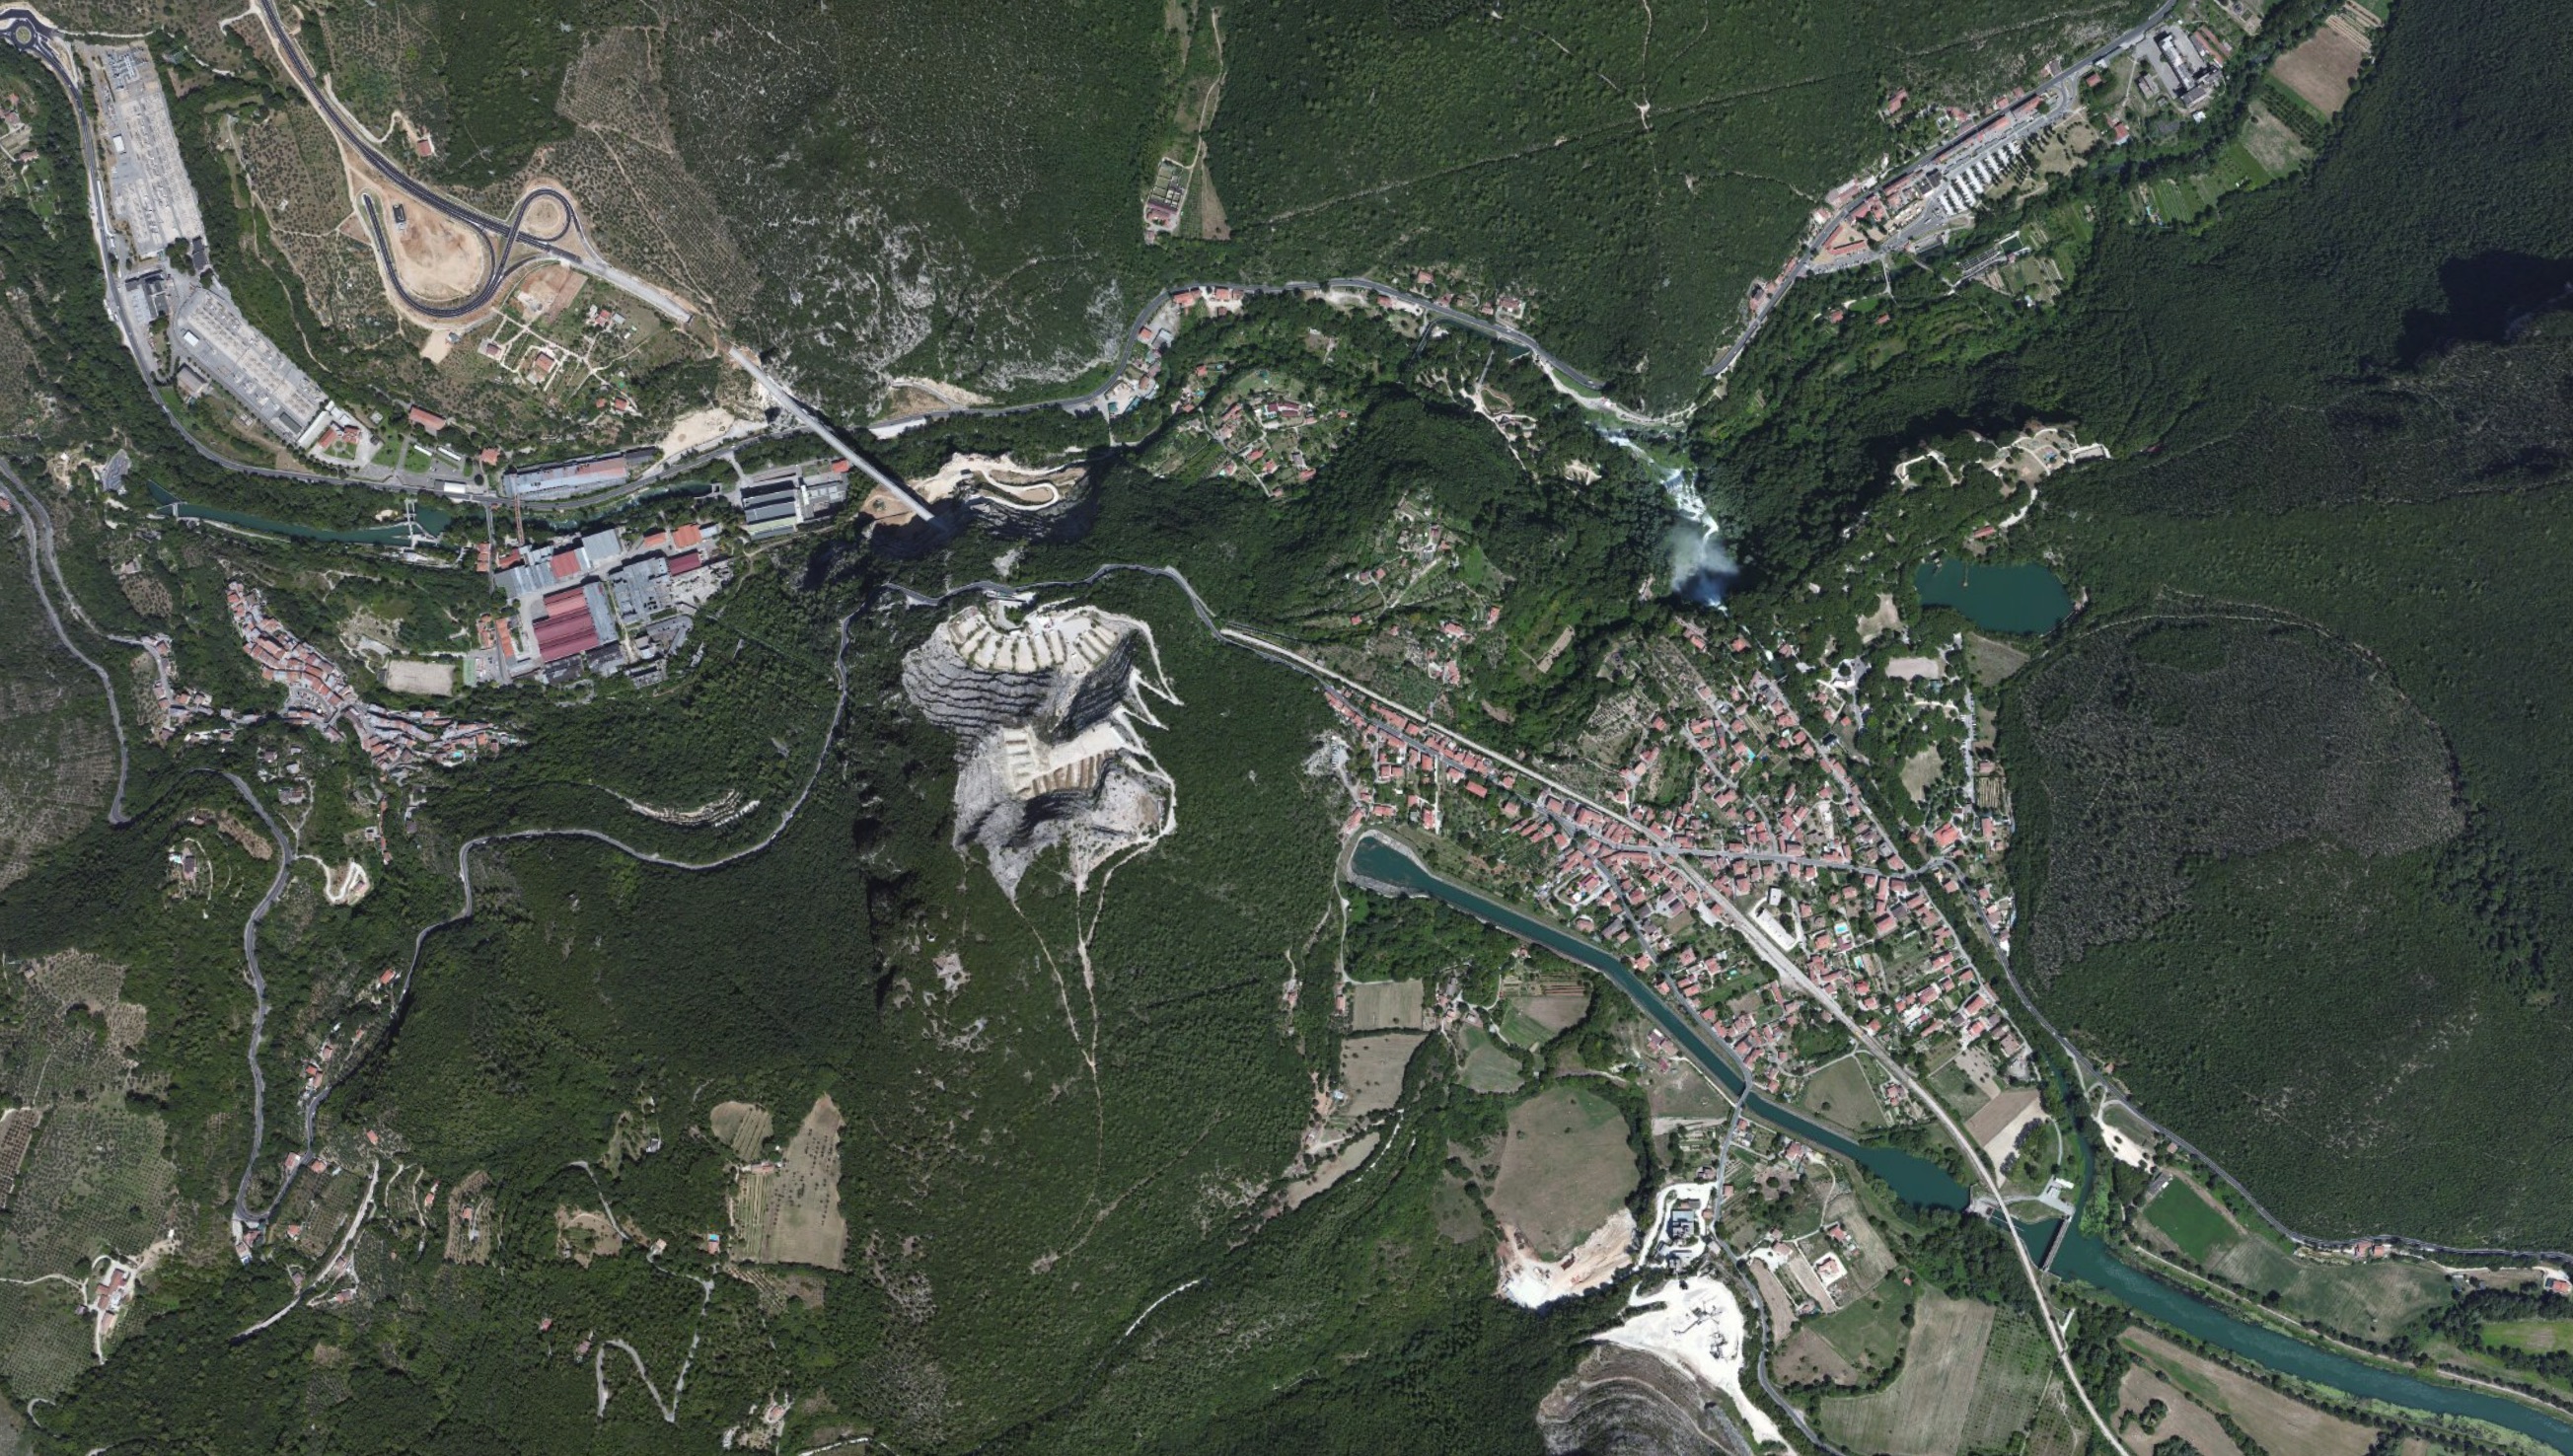 Satellite image of the Cascata della Marmore